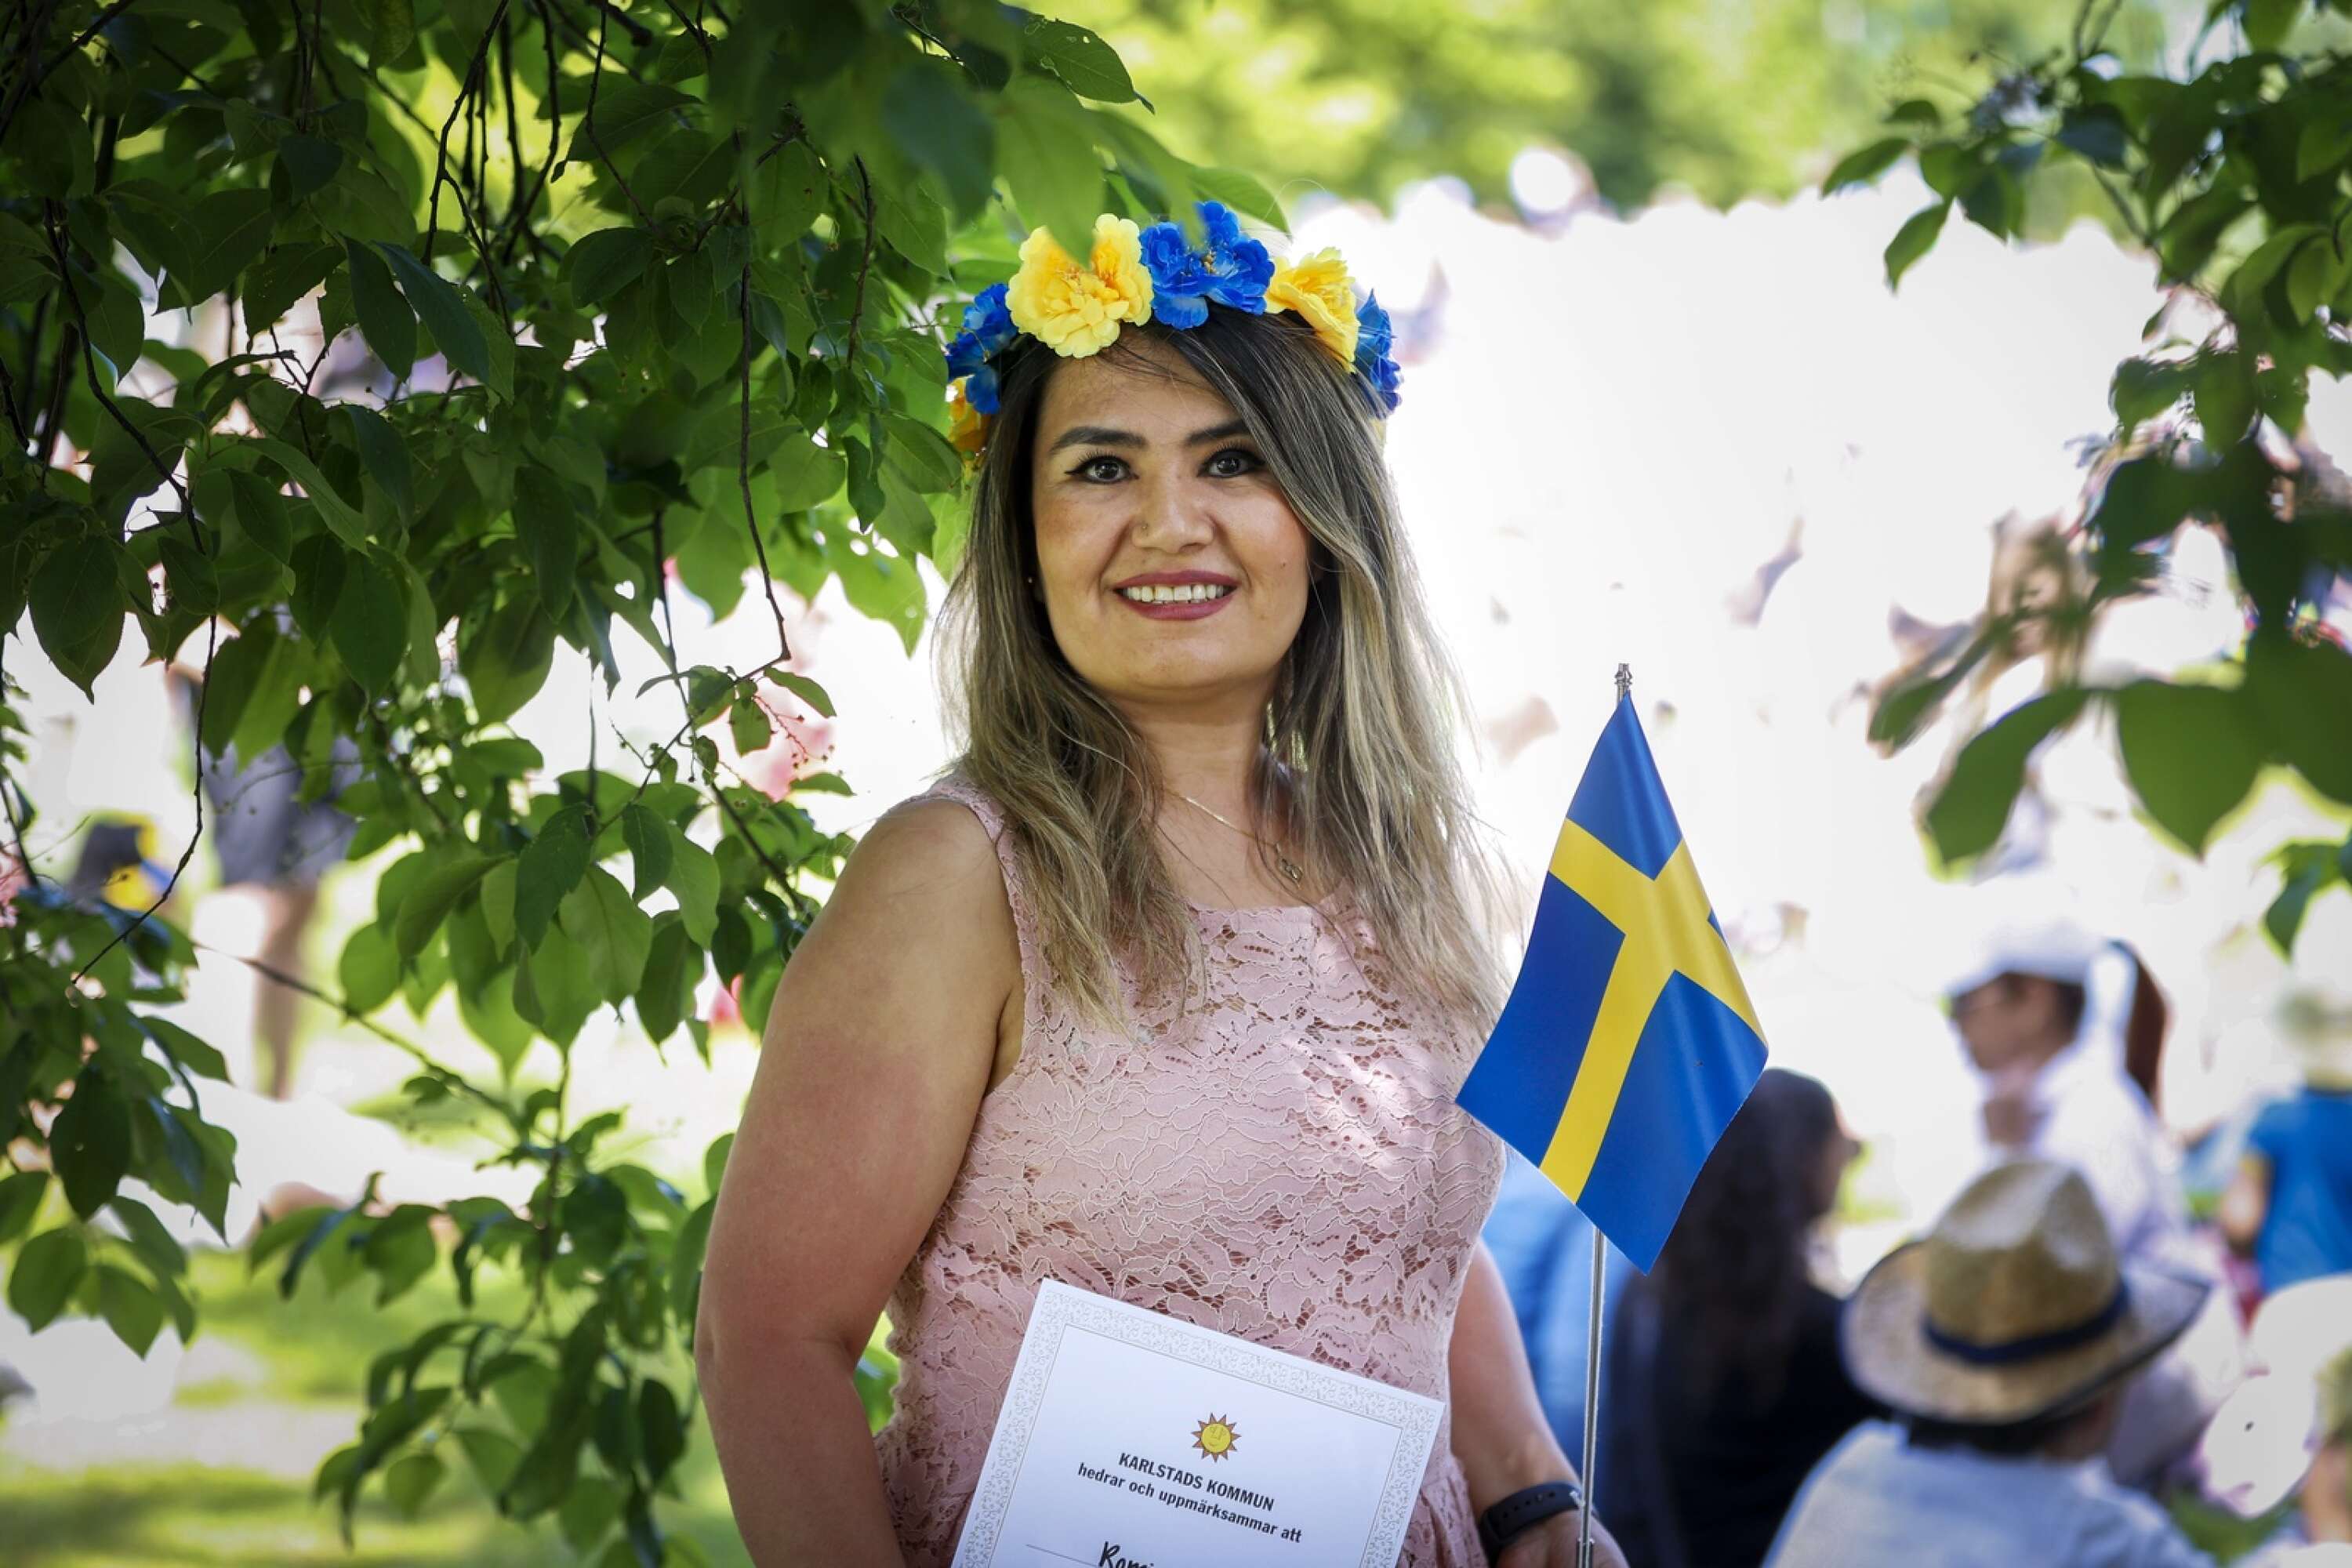 Romina Fazli är en av de nya svenska medborgare som välkomnas.